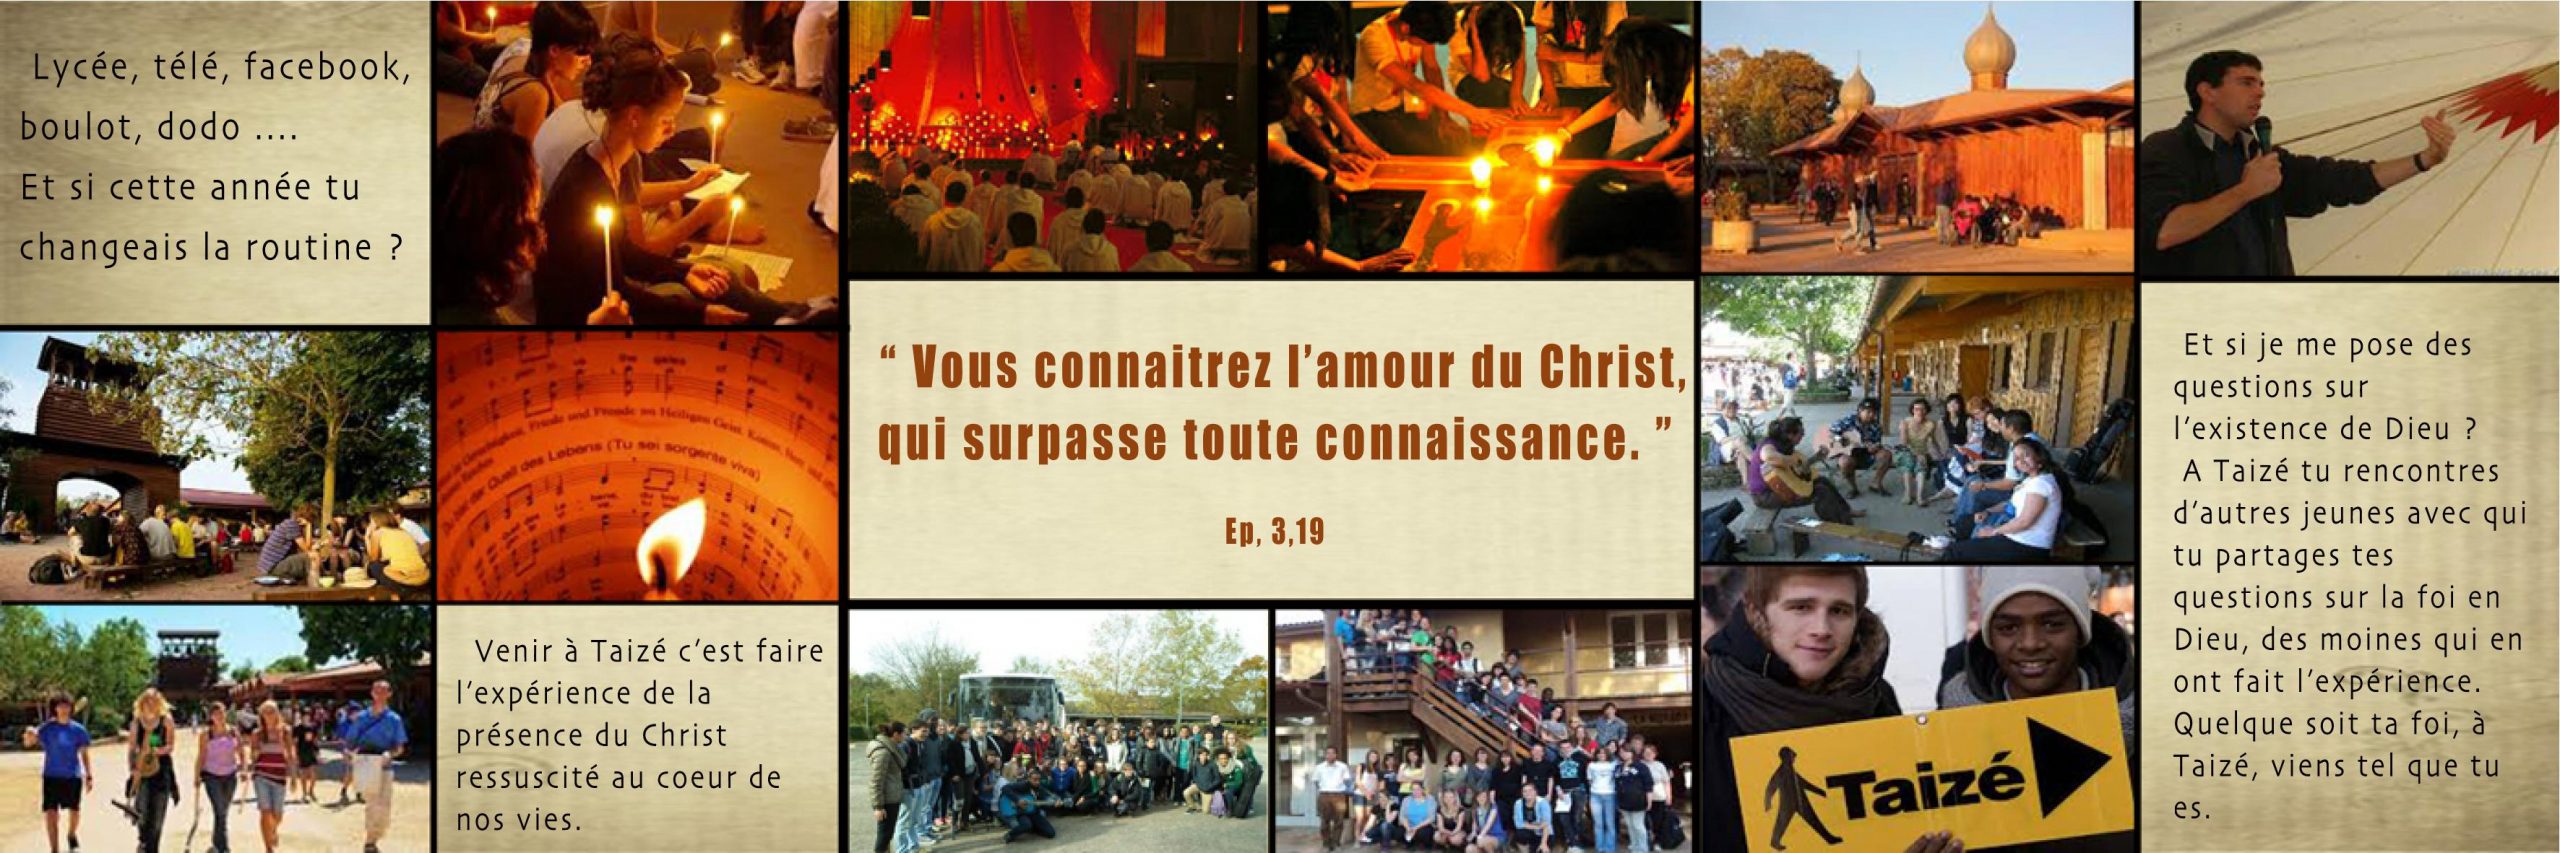 Taizé 2017 – diocèse de Chartres – du 30 octobre au 3 novembre